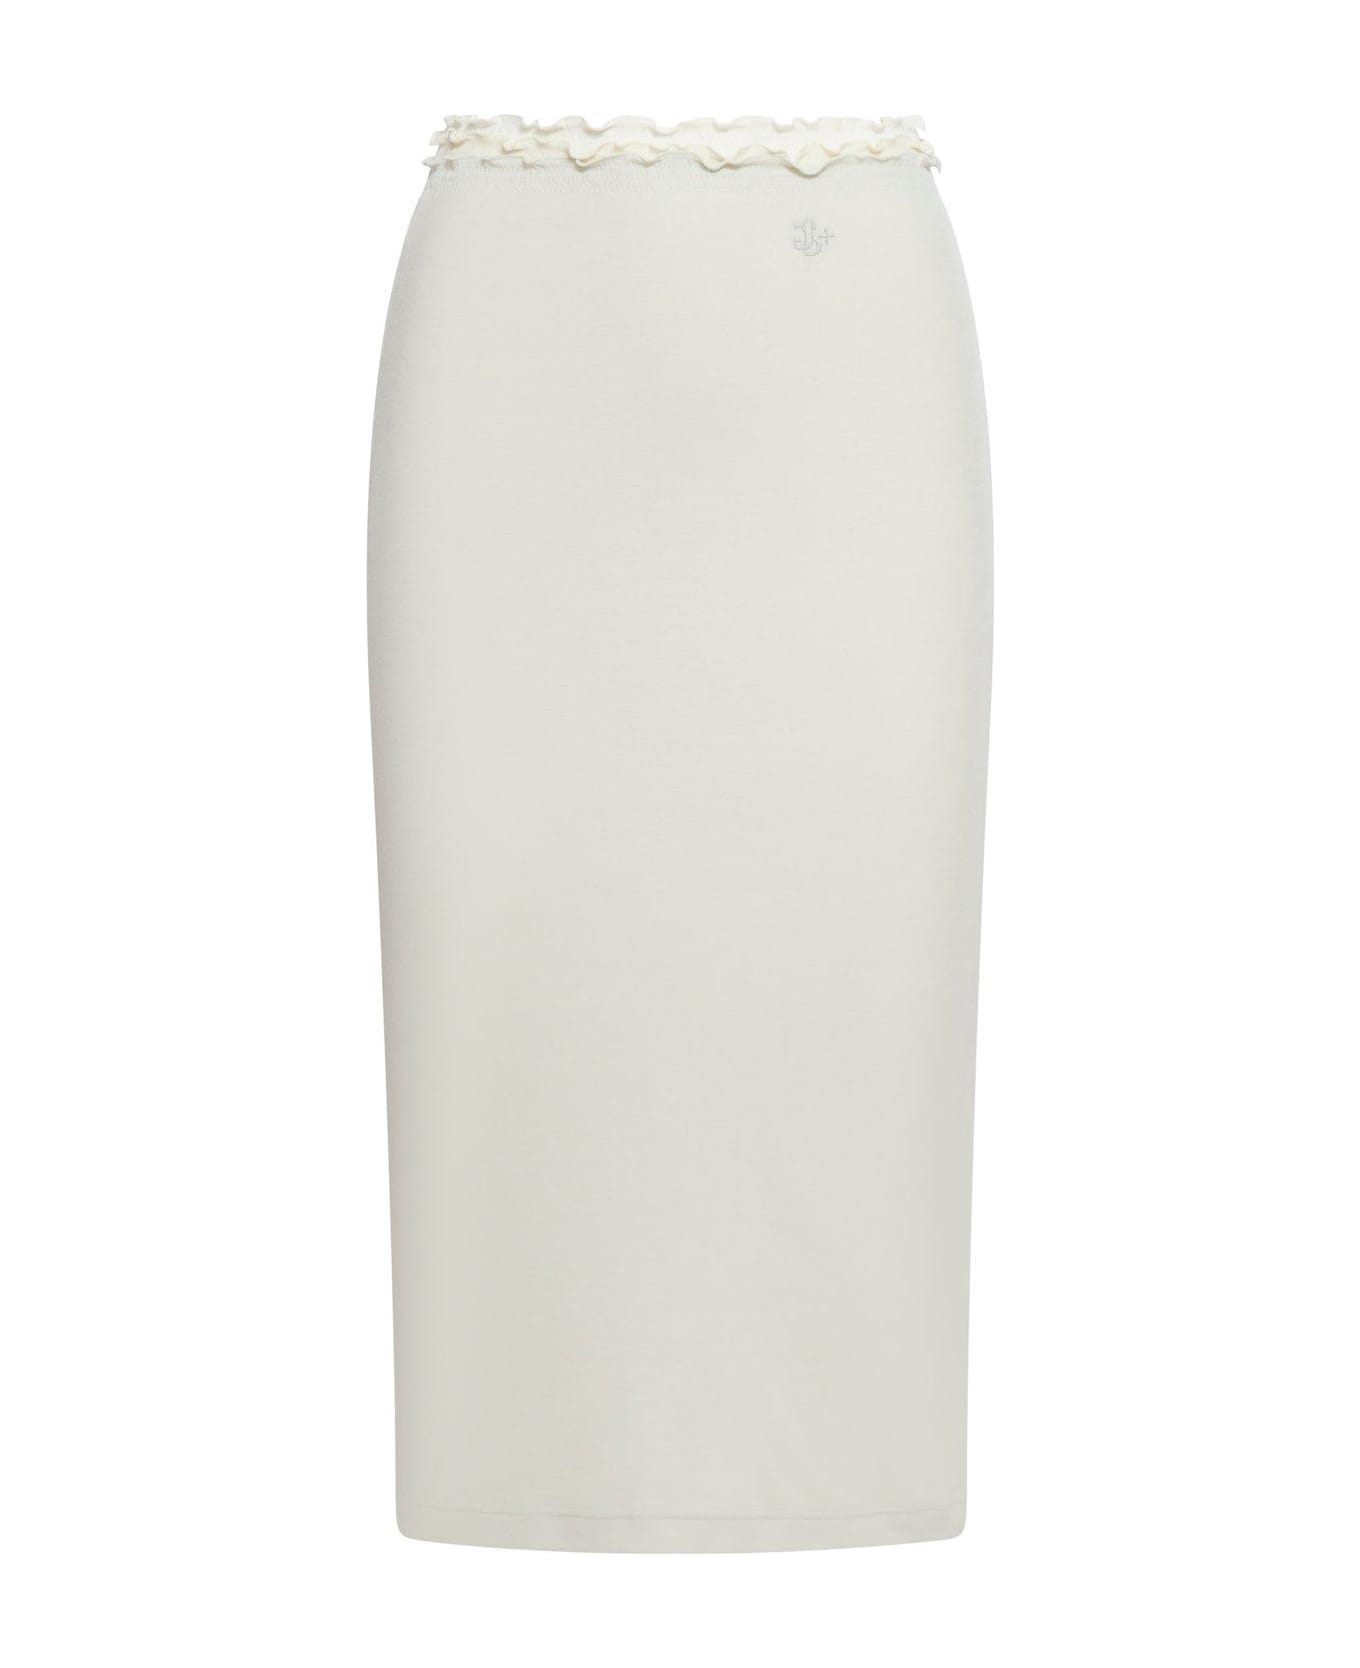 Jil Sander + High Waist Layered Midi Skirt - White